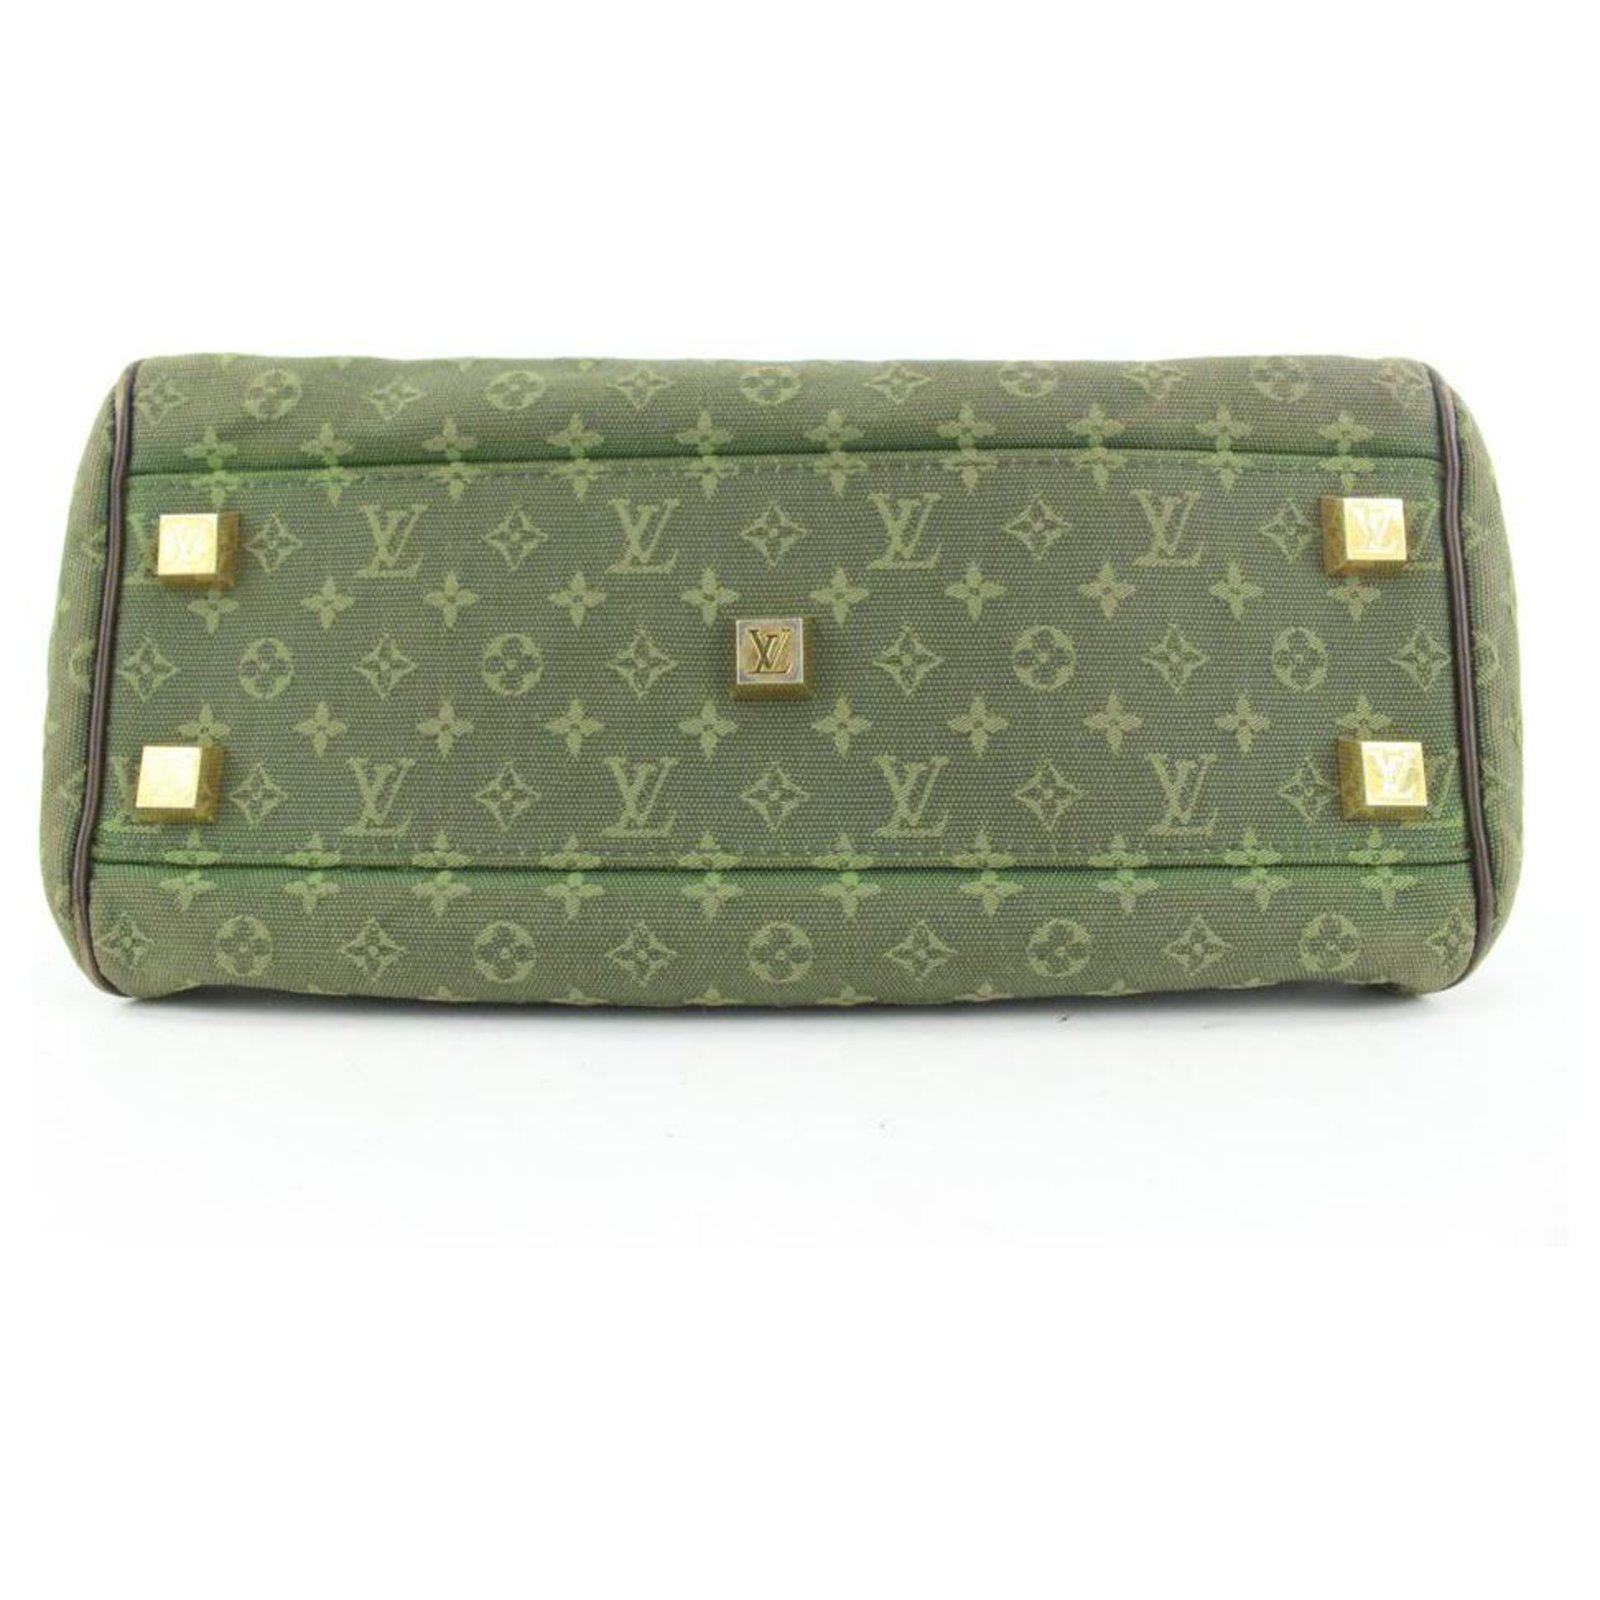 Louis Vuitton Josephine Pm Khaki 872852 Green Monogram Mini Lin